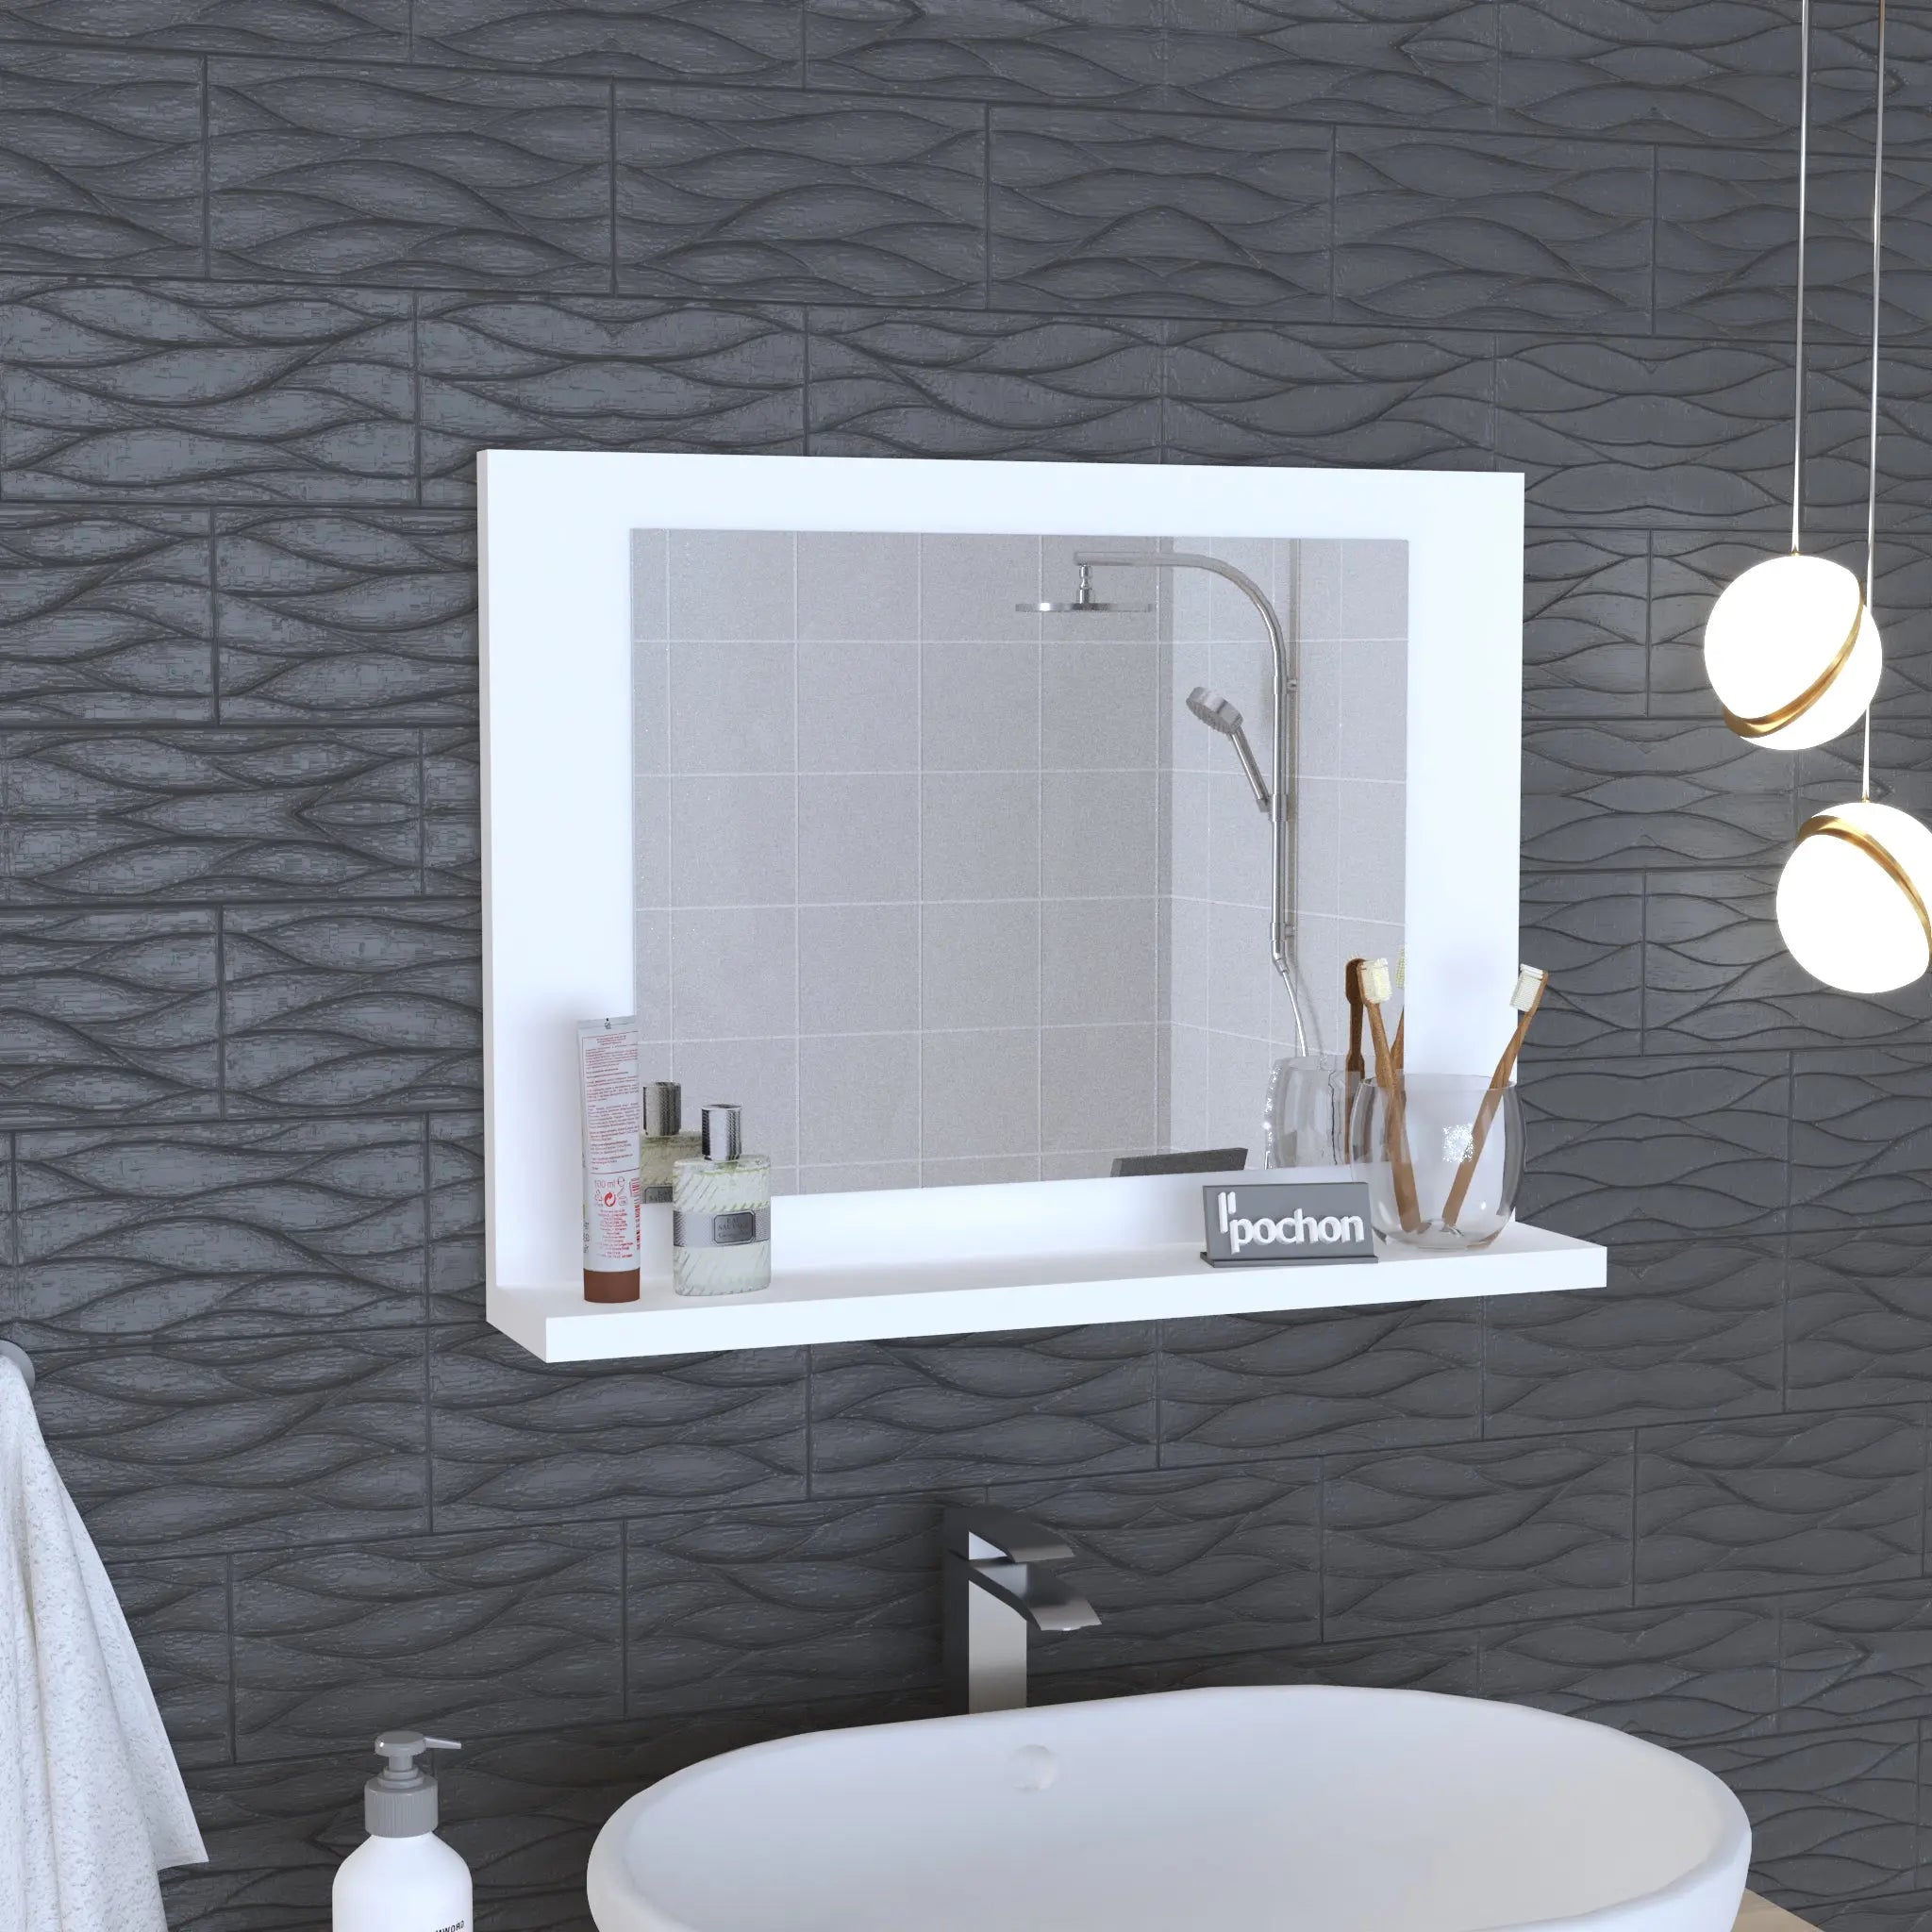 pochon-home-badkamer-spiegel-wit-spiegelkast-make-up-spiegel-spiegel-met-plank-60x45x10-cm